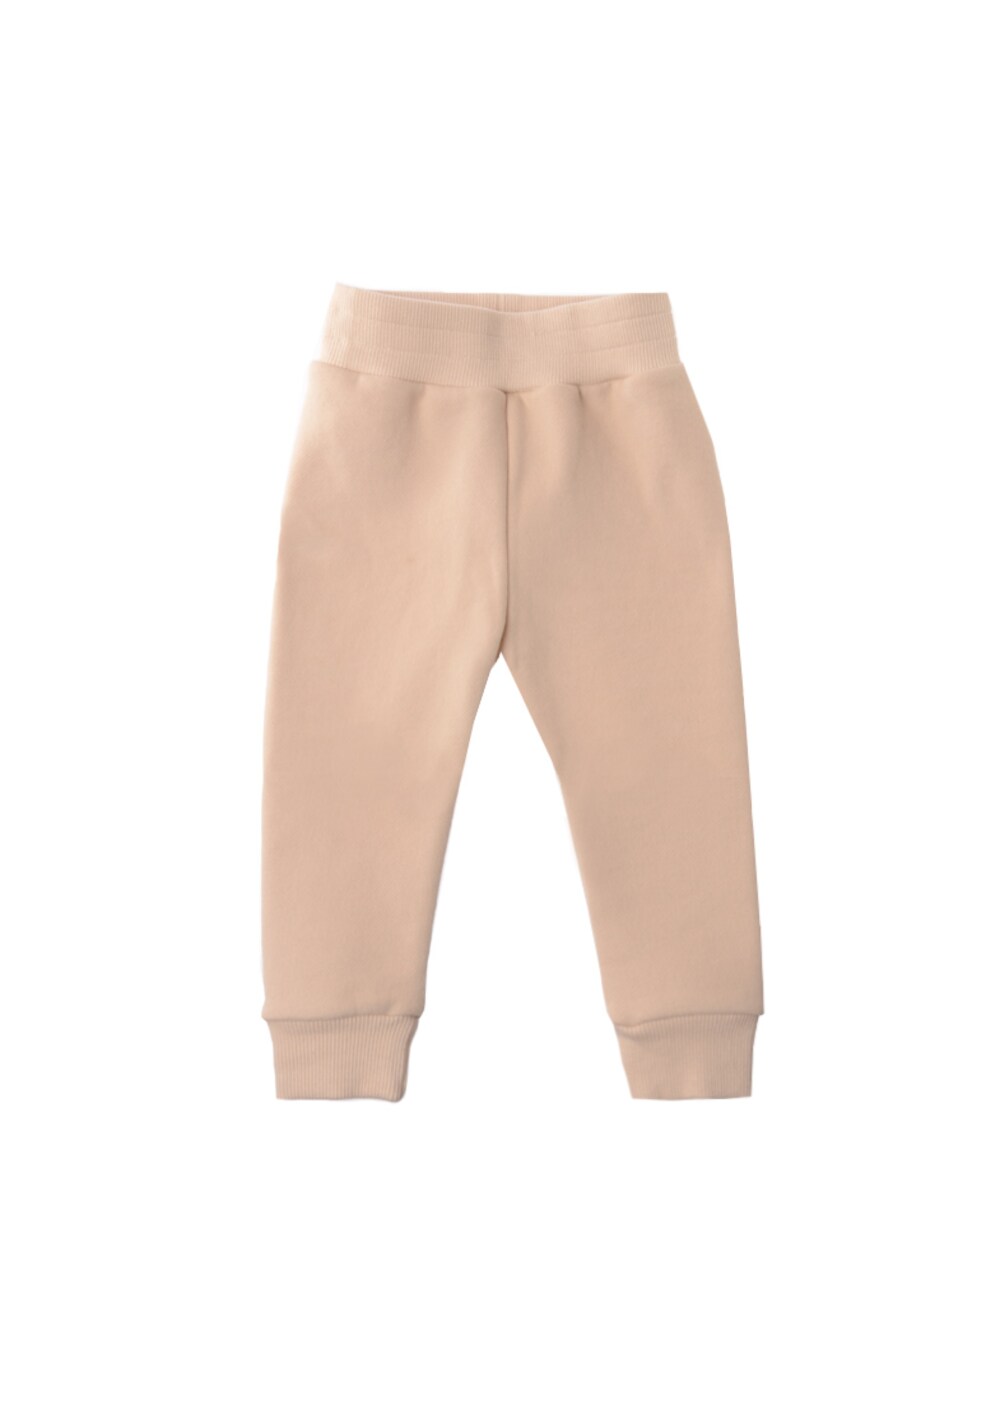 Обычные брюки LILIPUT, бежевый/песочный обычные брюки liliput бежевый песочный